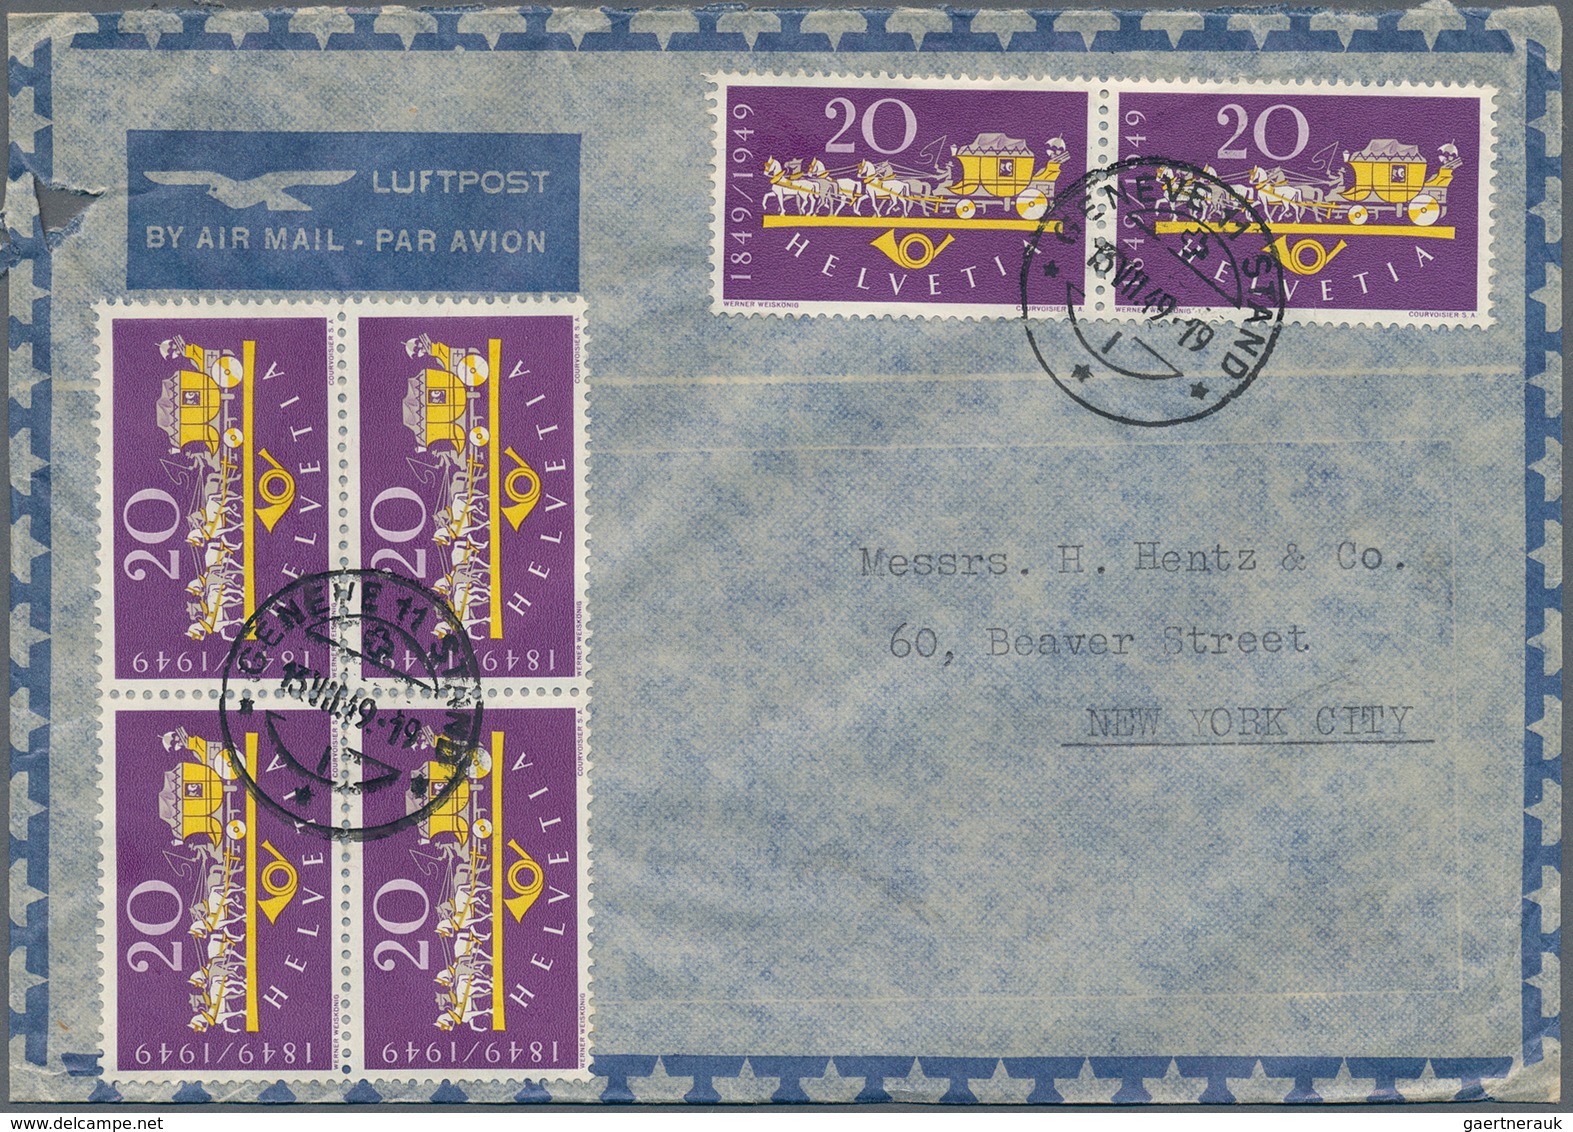 Schweiz: 1940/60(ca.), Sehr schöner Posten von ca. 125 LuPo-Briefen aus einer Schweiz-USA Korrespond